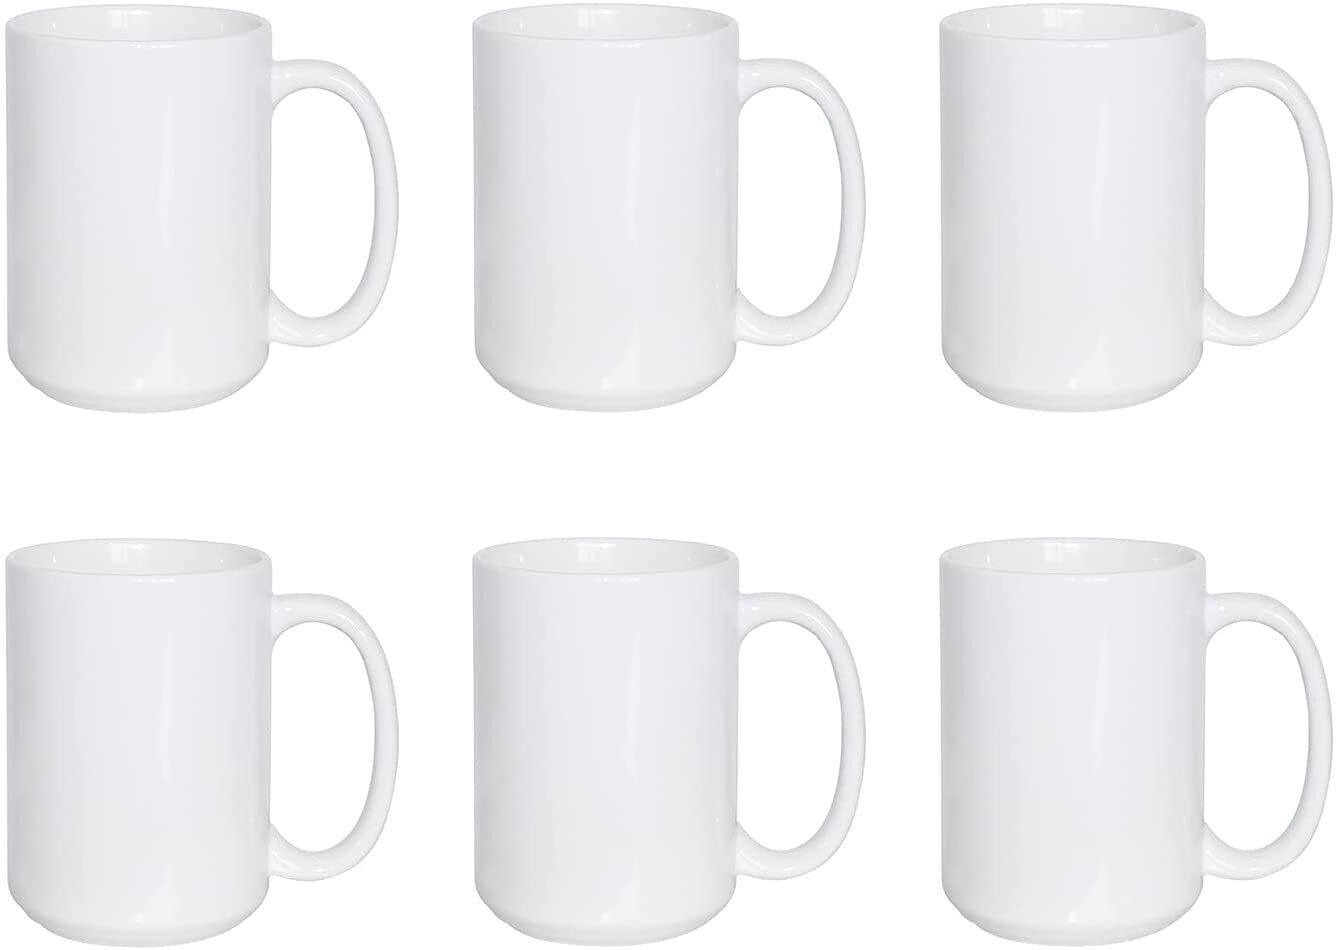 Custom Mug - Your Design of Choice